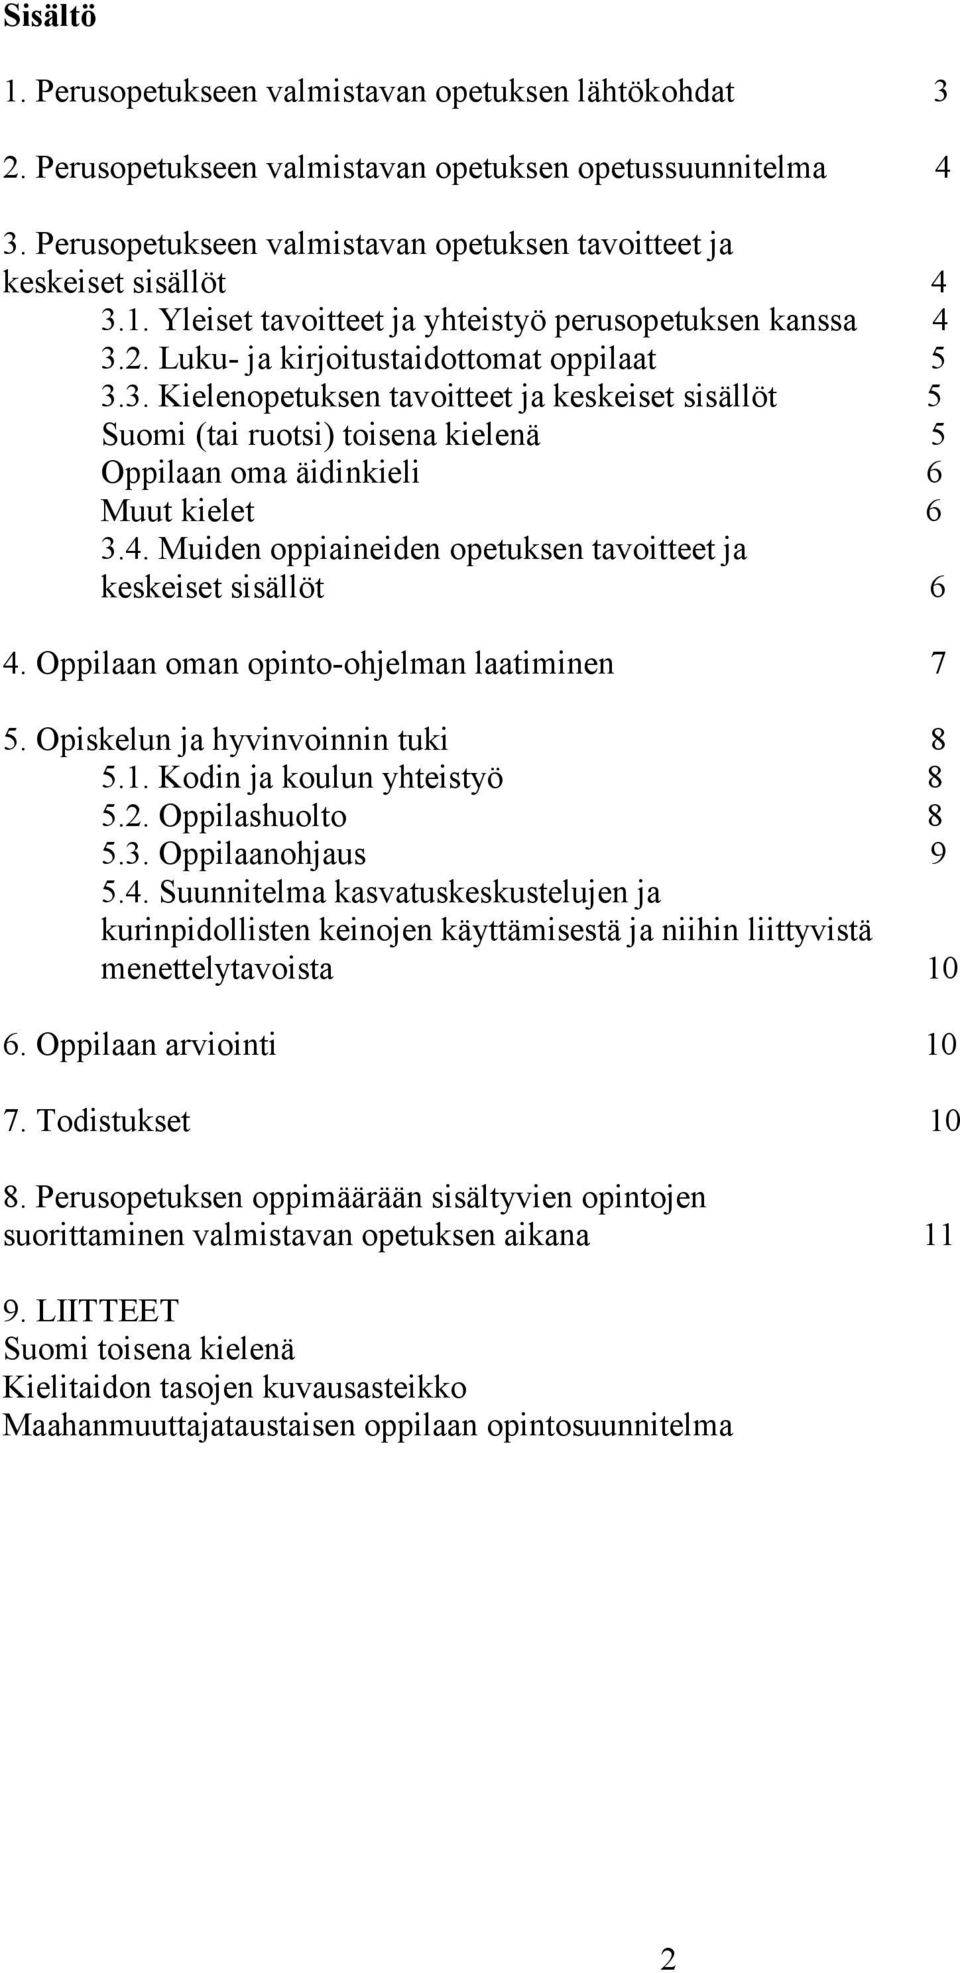 1. Yleiset tavoitteet ja yhteistyö perusopetuksen kanssa 4 3.2. Luku- ja kirjoitustaidottomat oppilaat 5 3.3. Kielenopetuksen tavoitteet ja keskeiset sisällöt 5 Suomi (tai ruotsi) toisena kielenä 5 Oppilaan oma äidinkieli 6 Muut kielet 6 3.